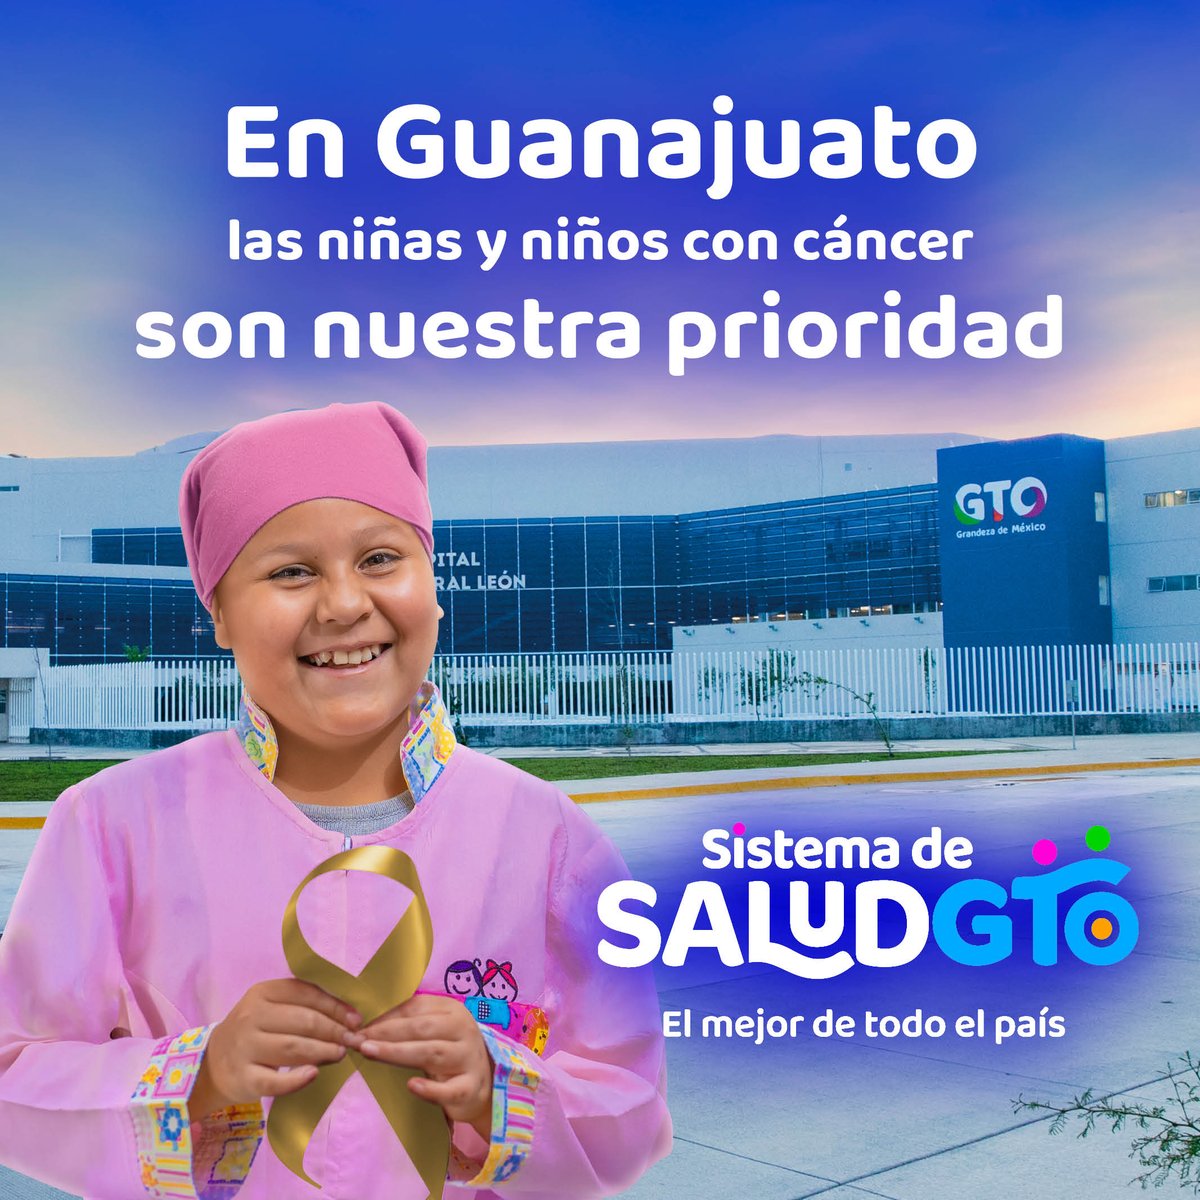 En Guanajuato sí se brinda atención gratuita a las niñas y niños con cáncer, y siempre se les dan sus medicamentos, por eso somos el mejor sistema de salud de todo el país. ⛹🏻👧🏼⛹️‍♀️👶🏻🩺 #UnidosConstruimosGTO ##GTO #GrandezaDeMéxico